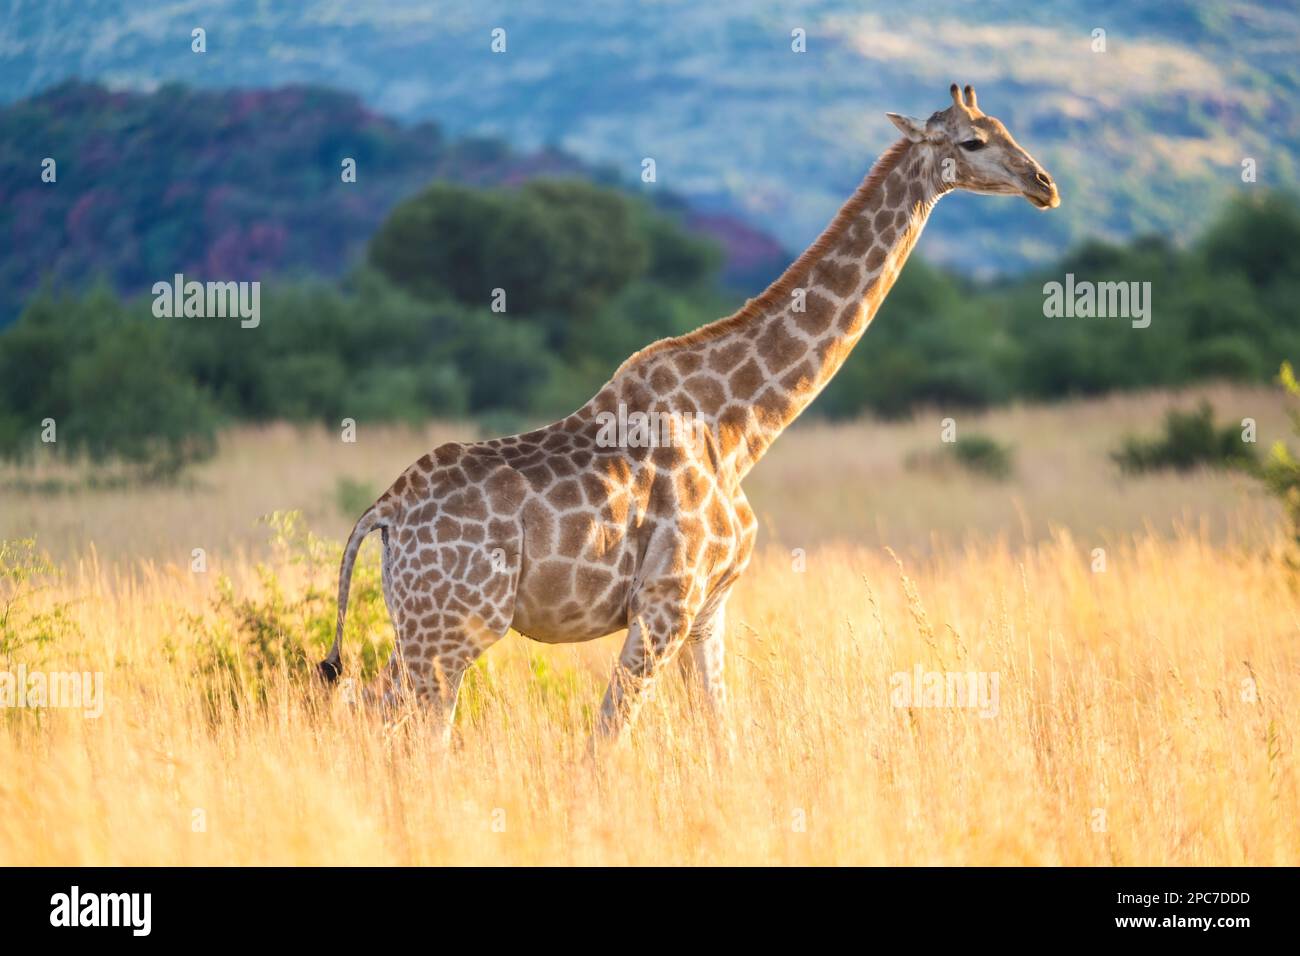 Giraffe, parc national de Pilanesburg, nr Johannesburg, Afrique du Sud Banque D'Images